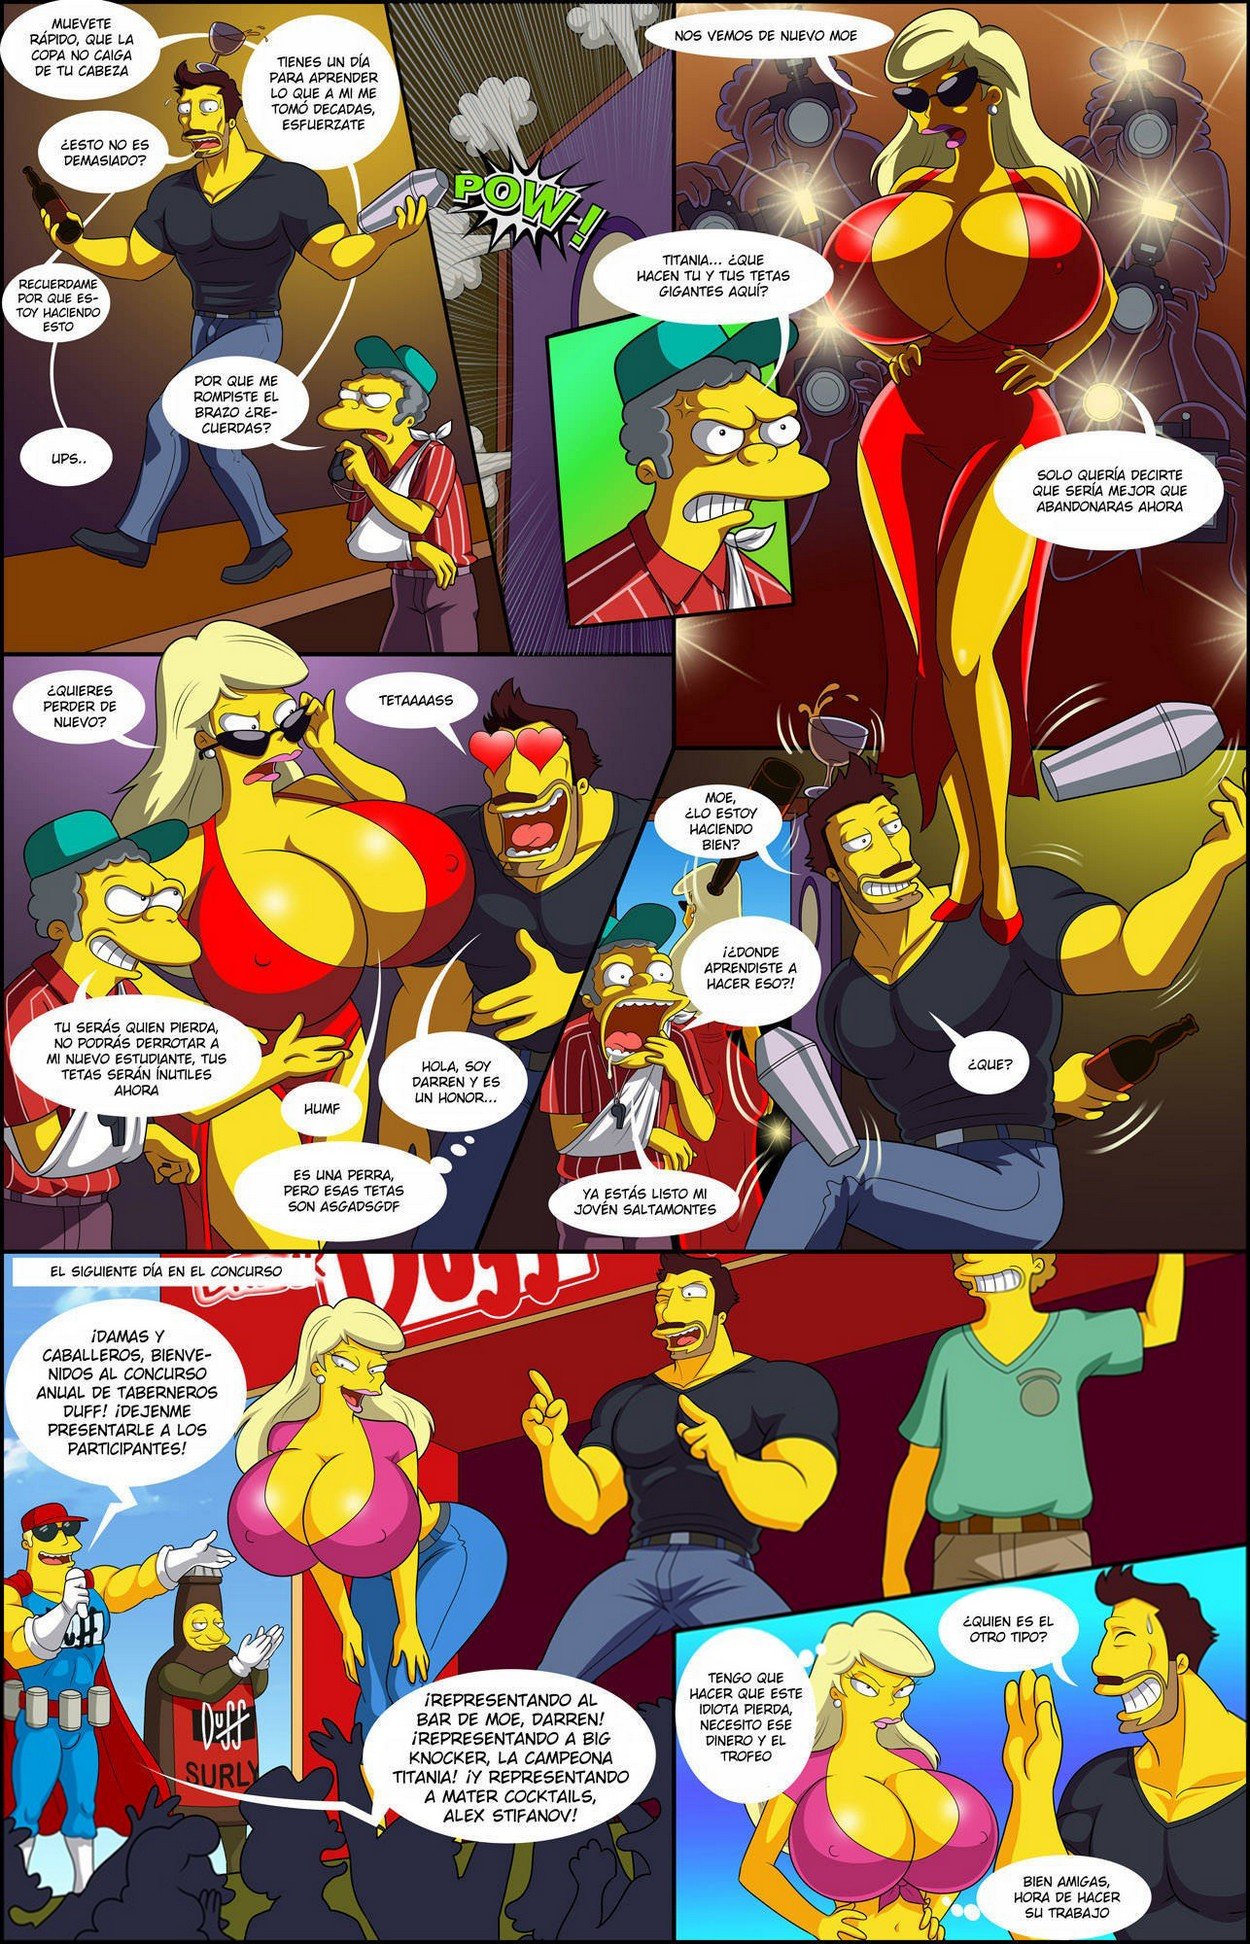 La Aventura de Darren 5 – Los Simpsons - 1